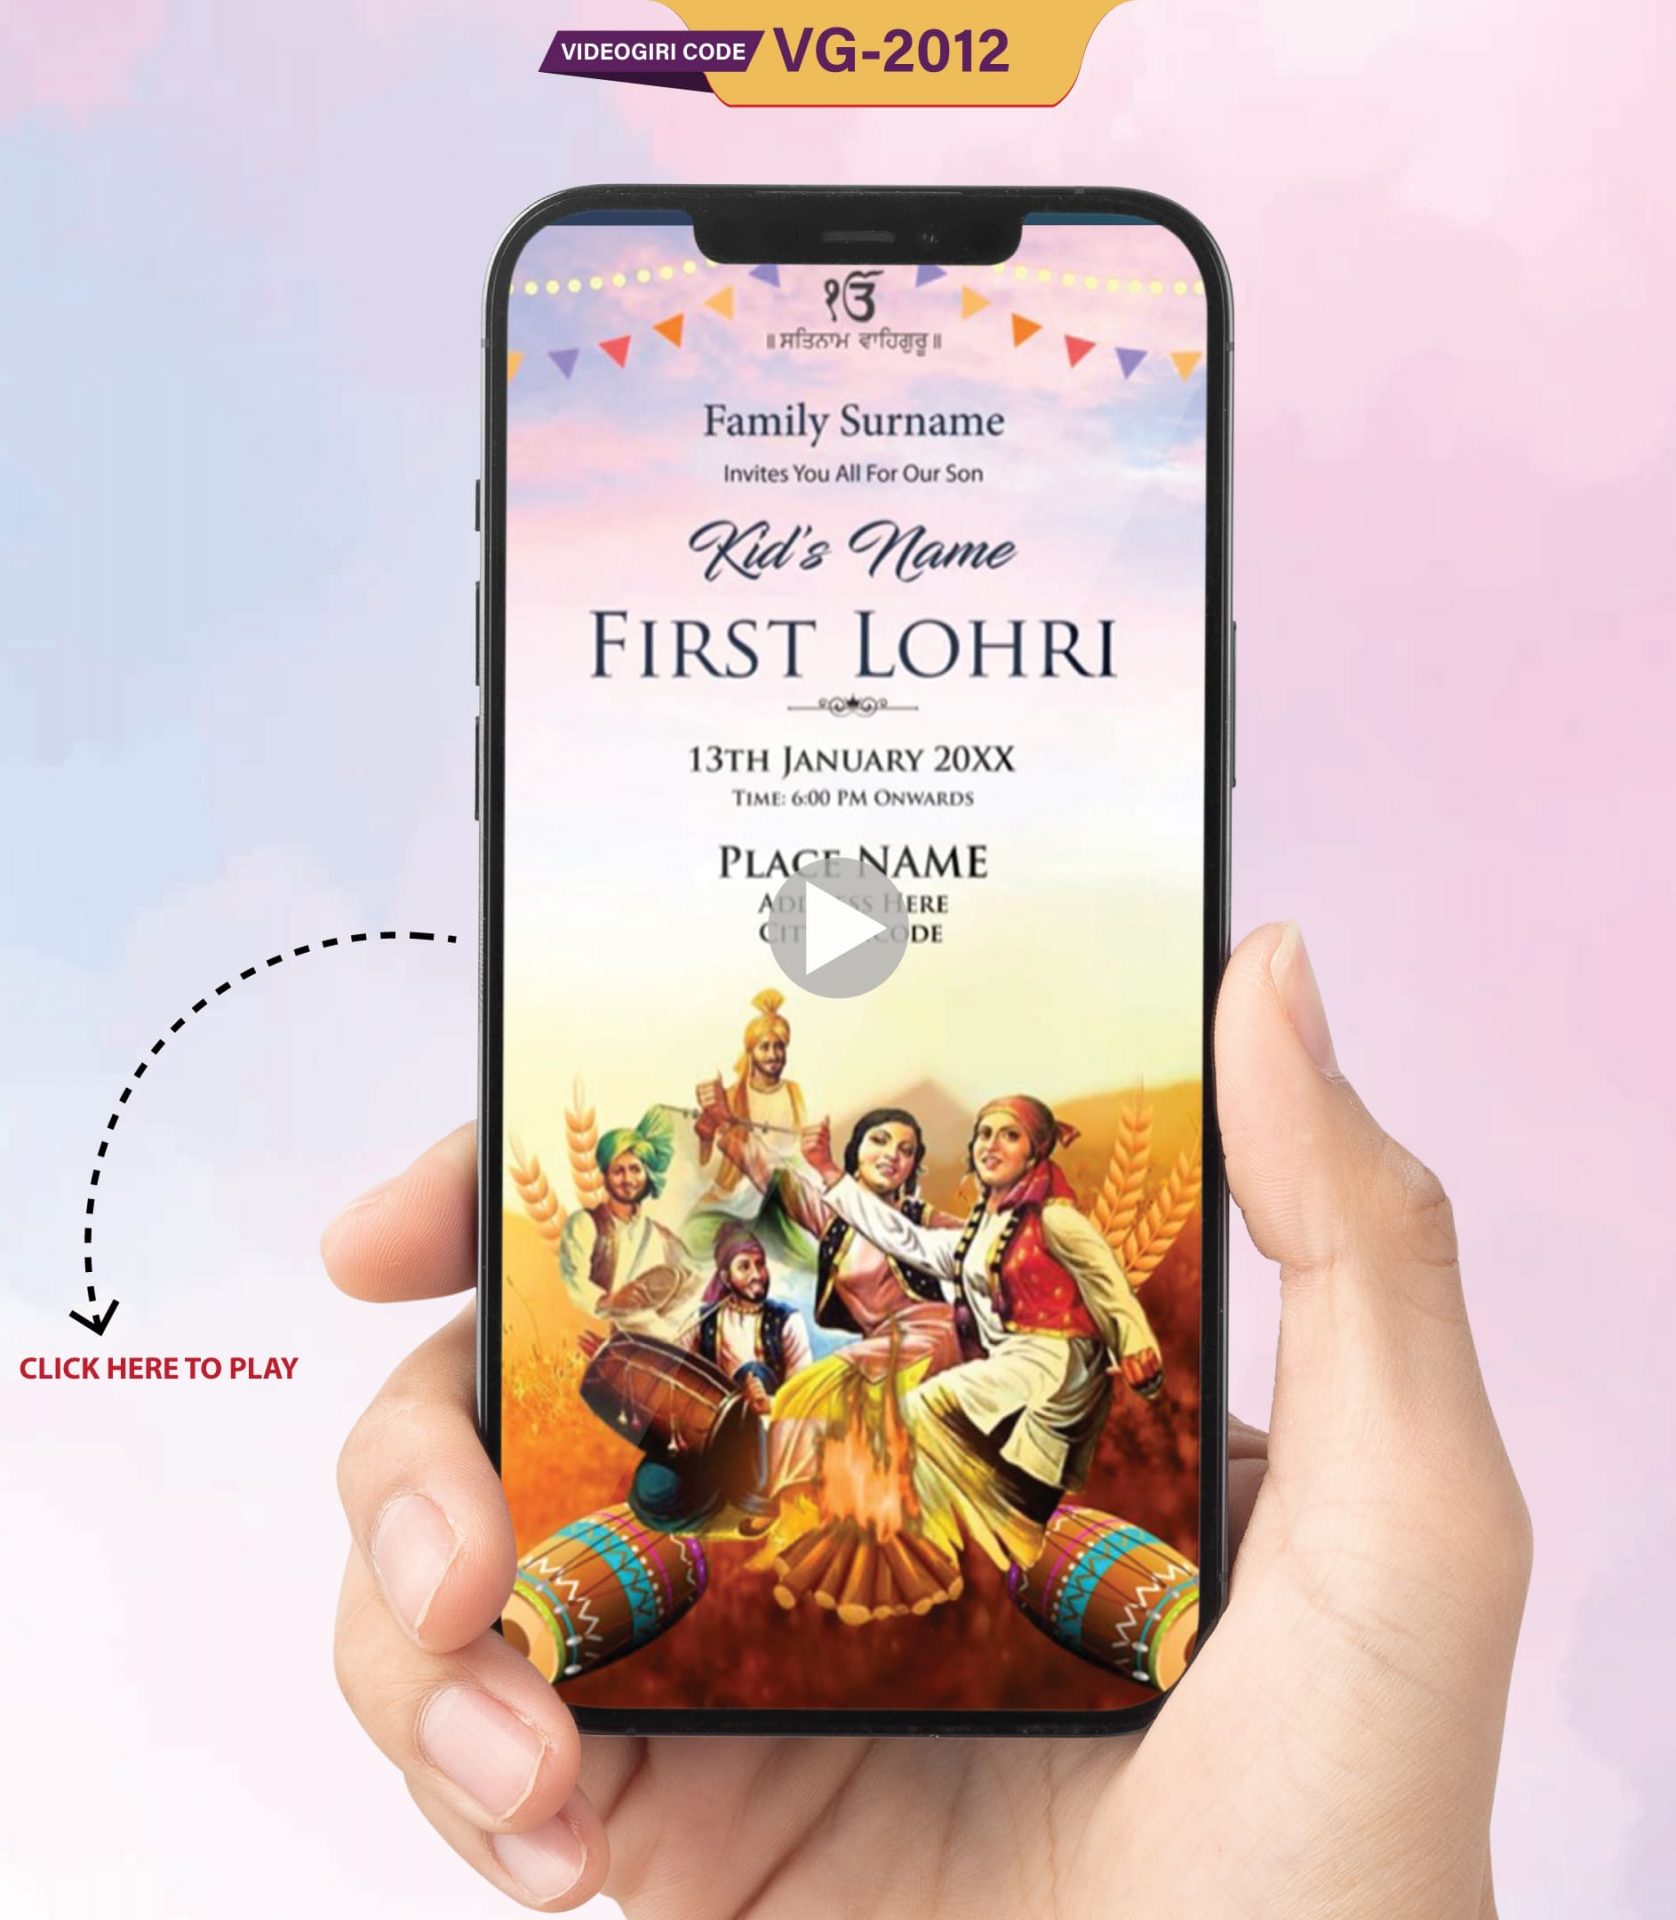 First Lohri Invitation Video